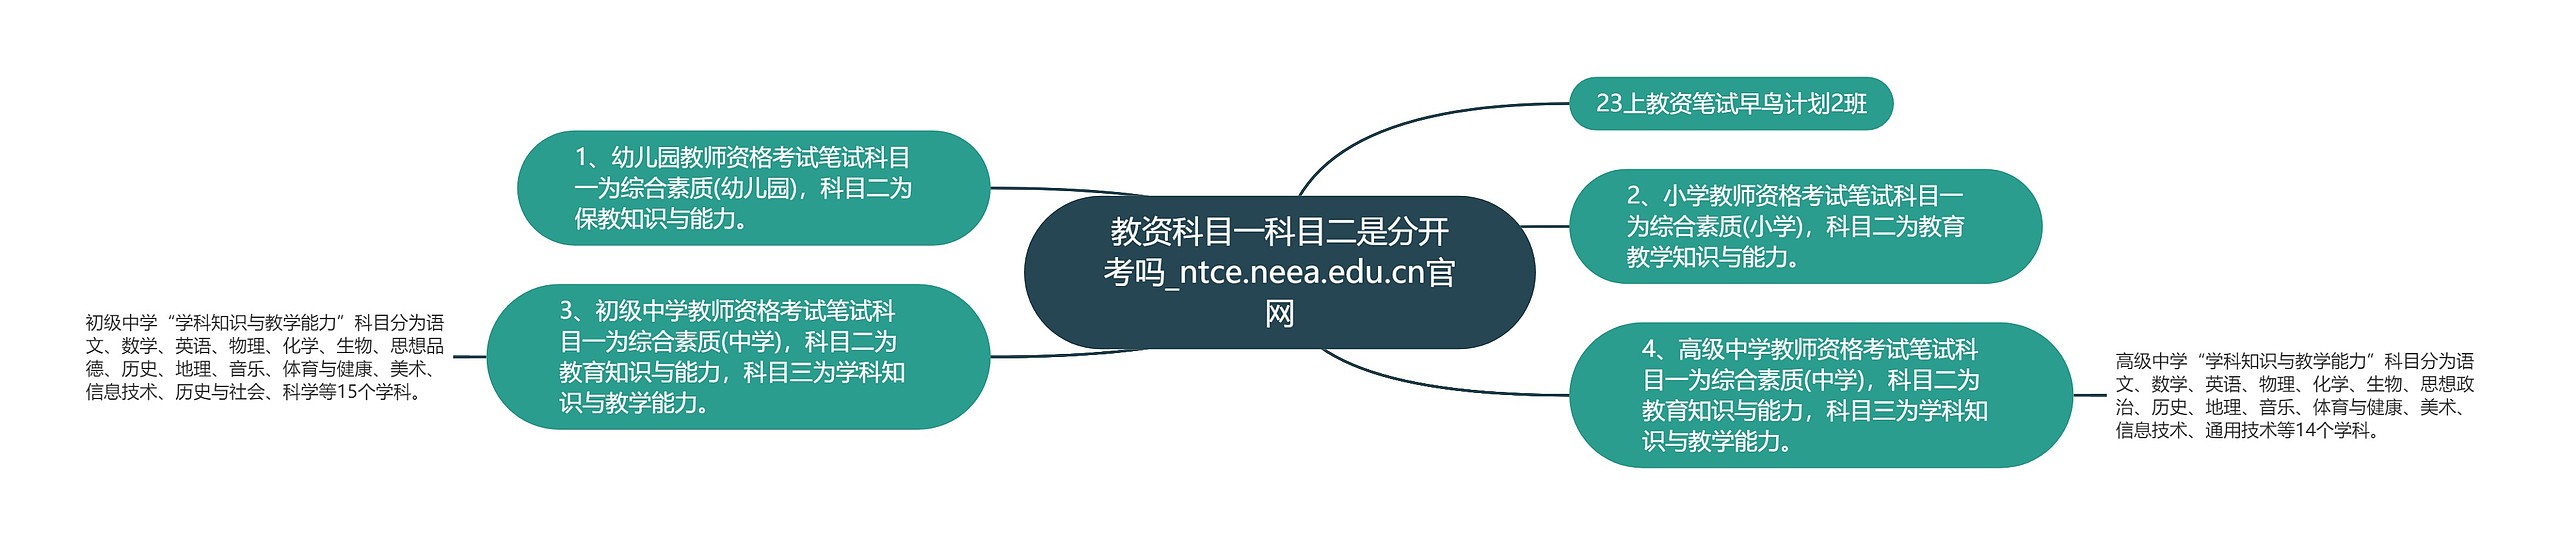 教资科目一科目二是分开考吗_ntce.neea.edu.cn官网思维导图